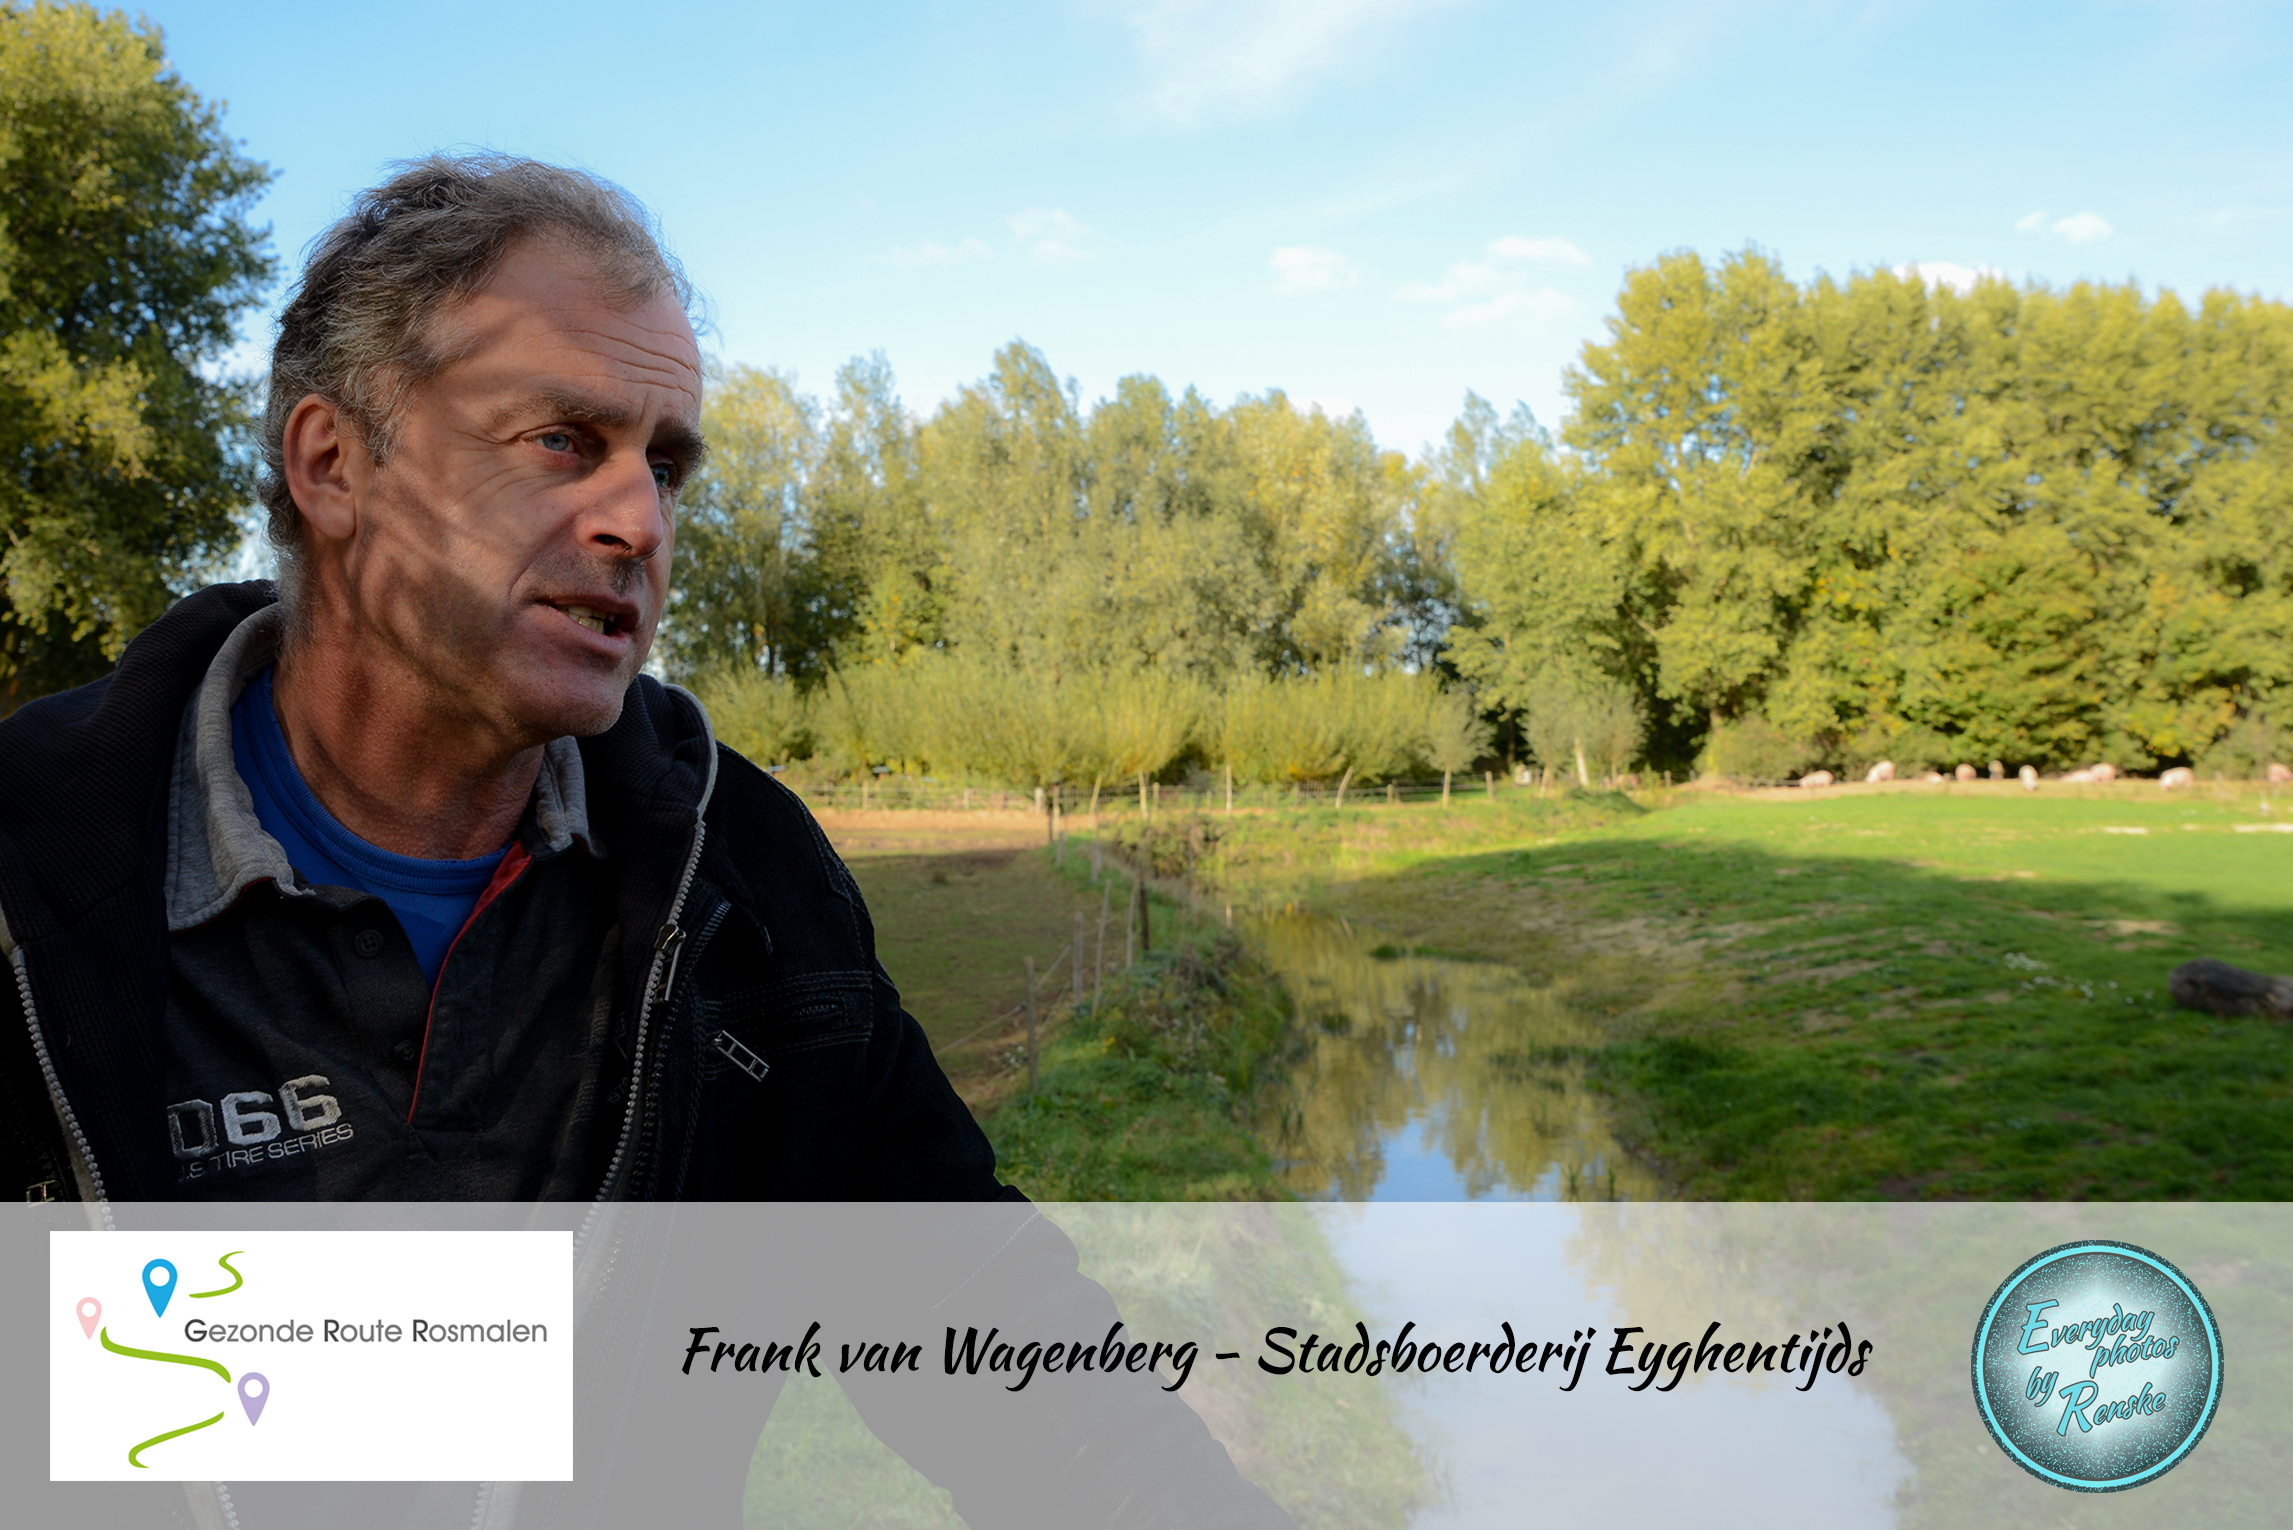 Frank van Wagenberg - Stadsboerderij Eyghentijds - Gezonde Route Rosmalen 2018